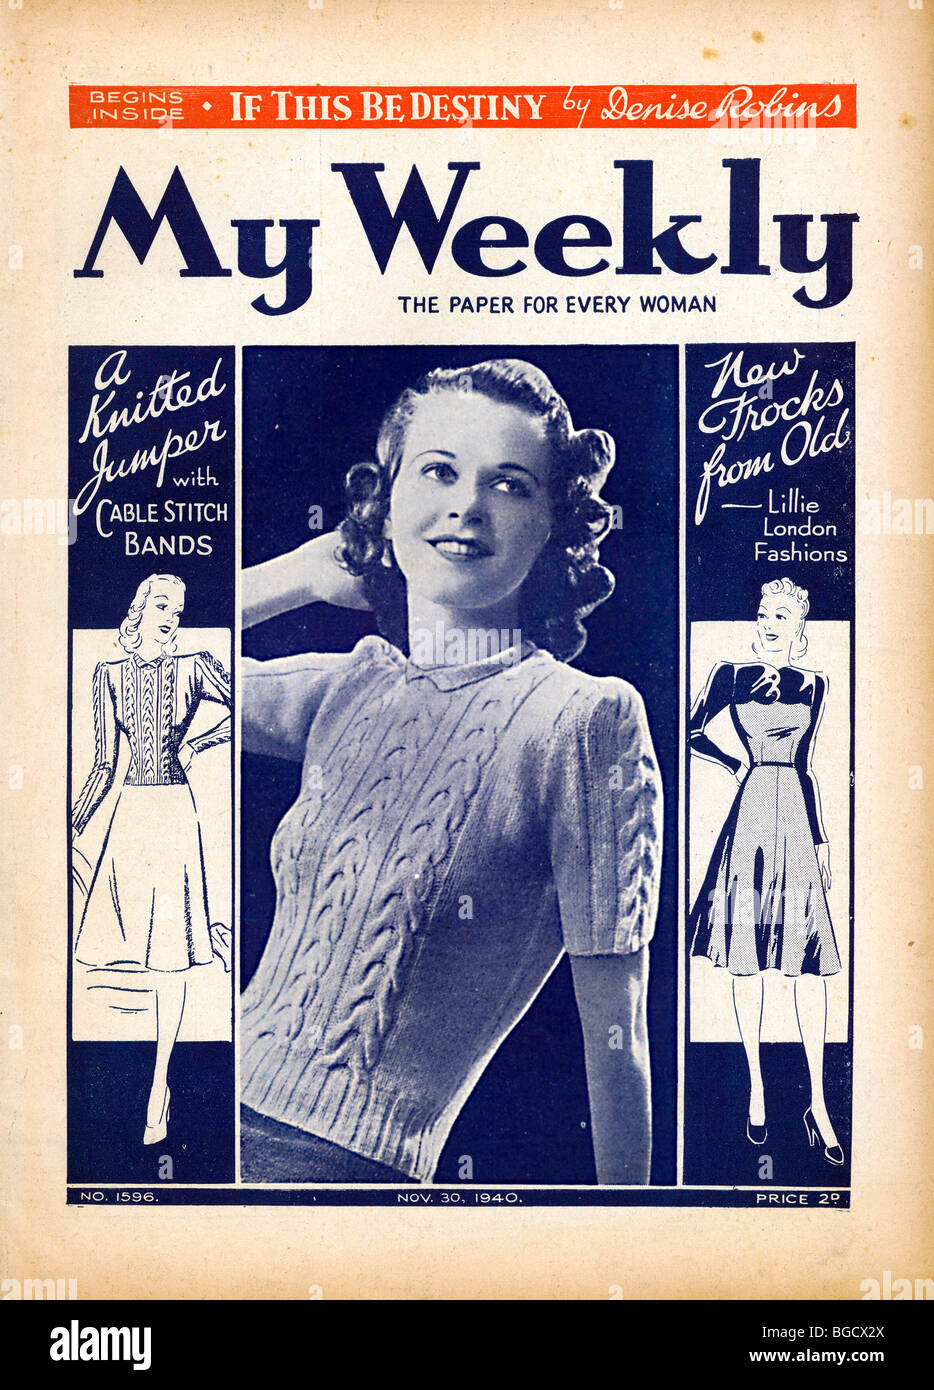 Mon hebdomadaire, Nov 1940 Couverture du magazine de mode de vie des femmes et le maintien Accueil/professionnels Banque D'Images